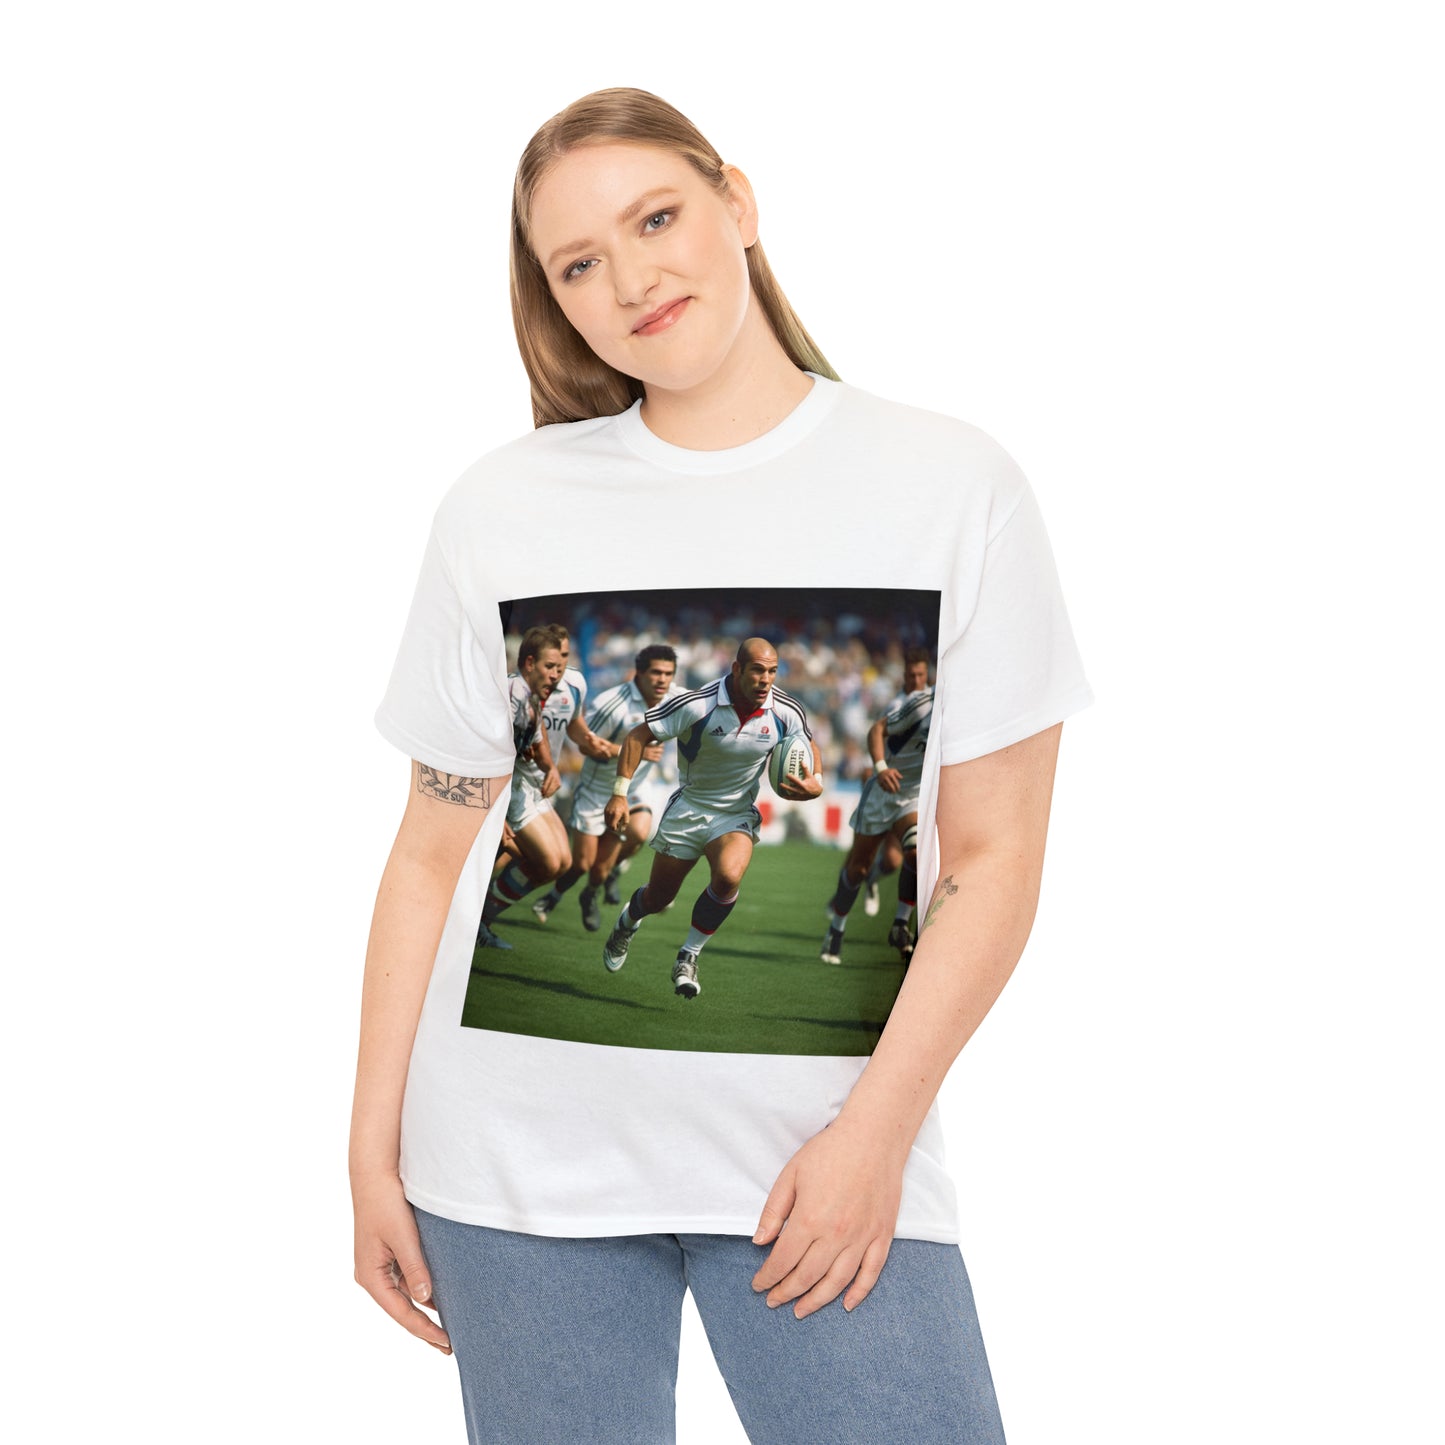 Zinedine Zidane - light shirts